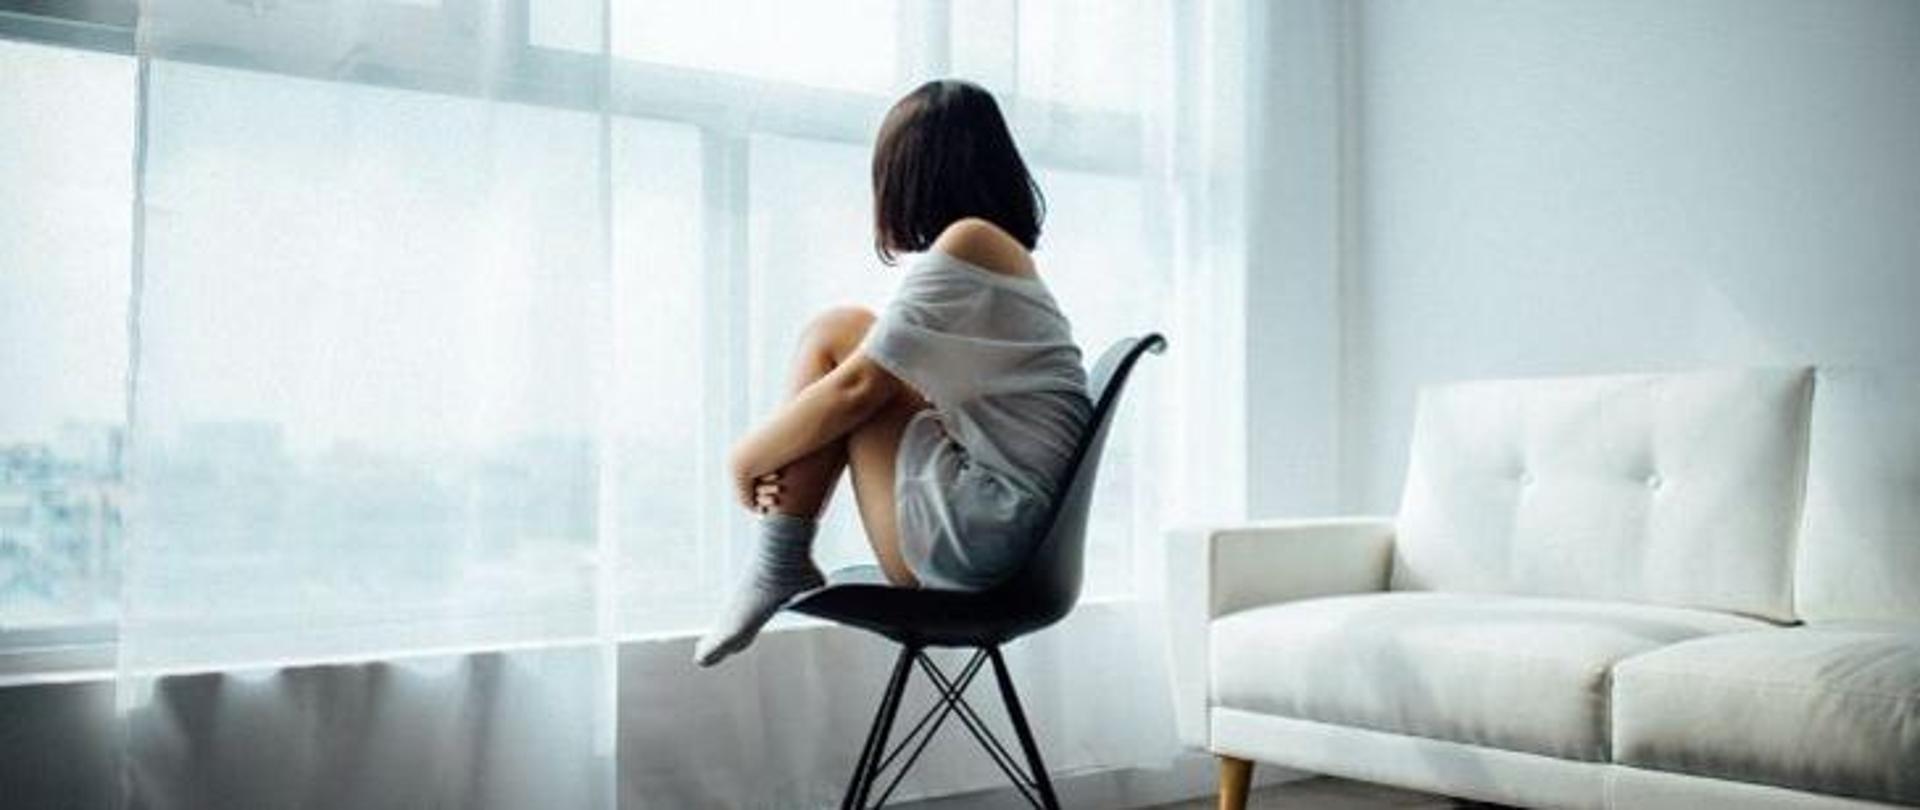 Samotna dziewczynka z podkulonymi nogami siędząca na krześle patrząca w okno 